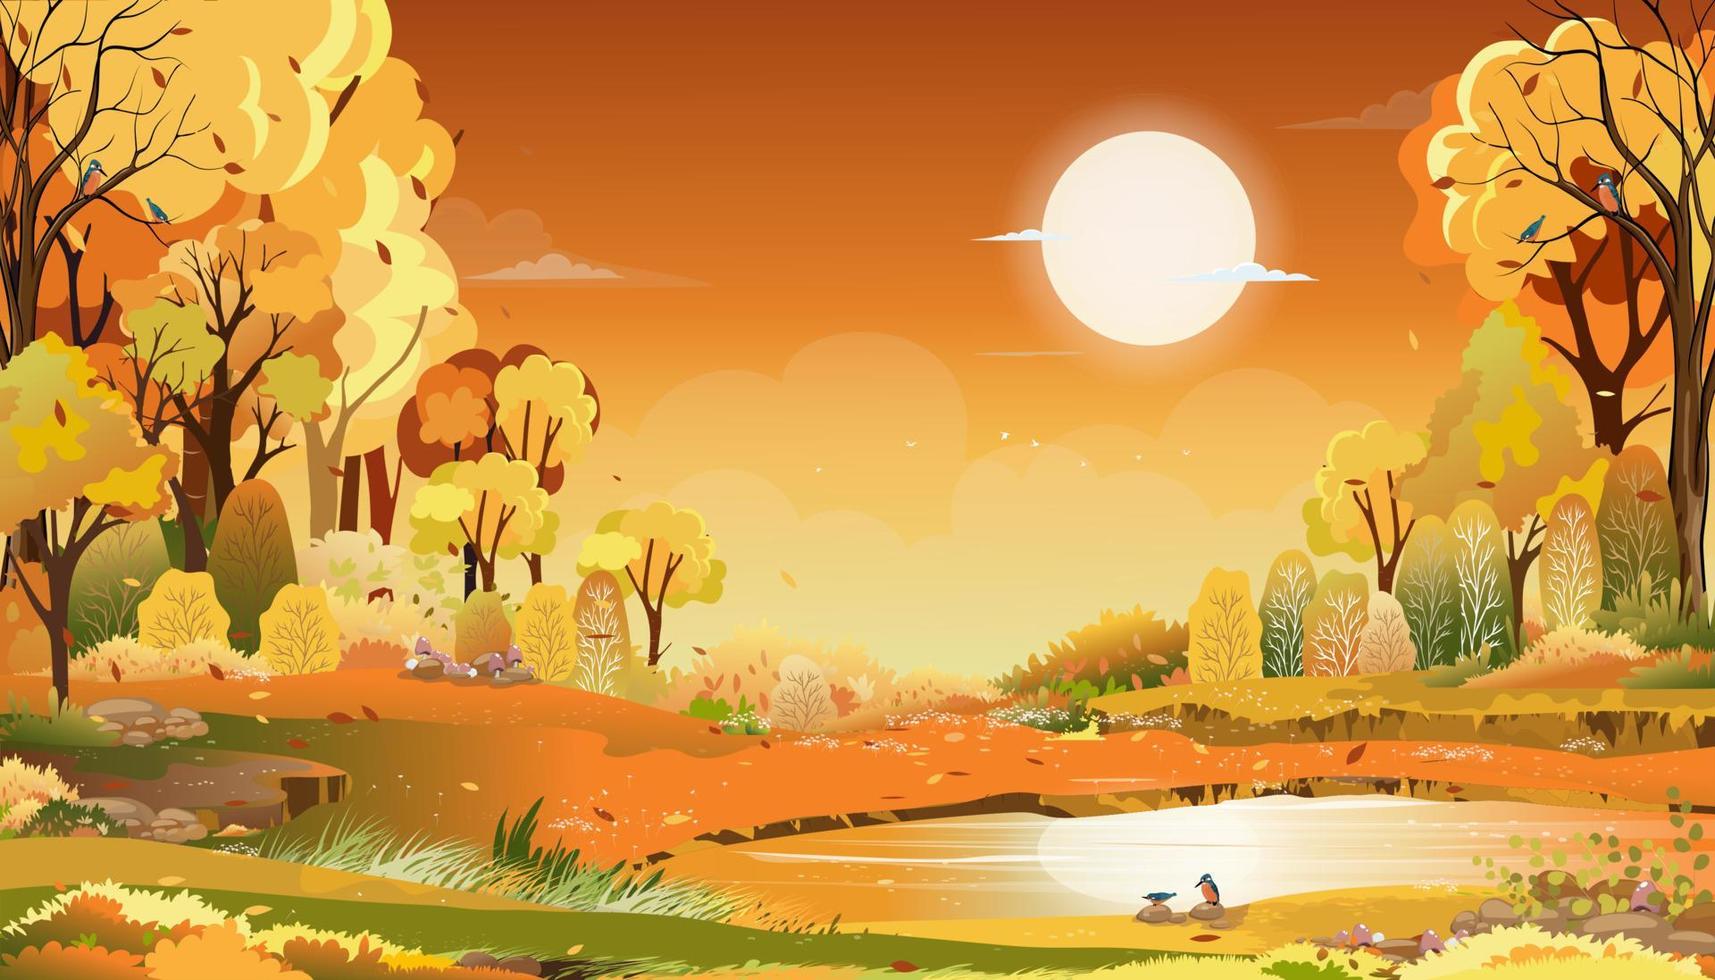 höstens lantliga landskap i kvällsljus med solnedgång, gul, orange himmelsbakgrund, vektor tecknad höstsäsong på landsbygden med skogsträd och gräsfält med soluppgång, naturlig banderoll i bakgrunden